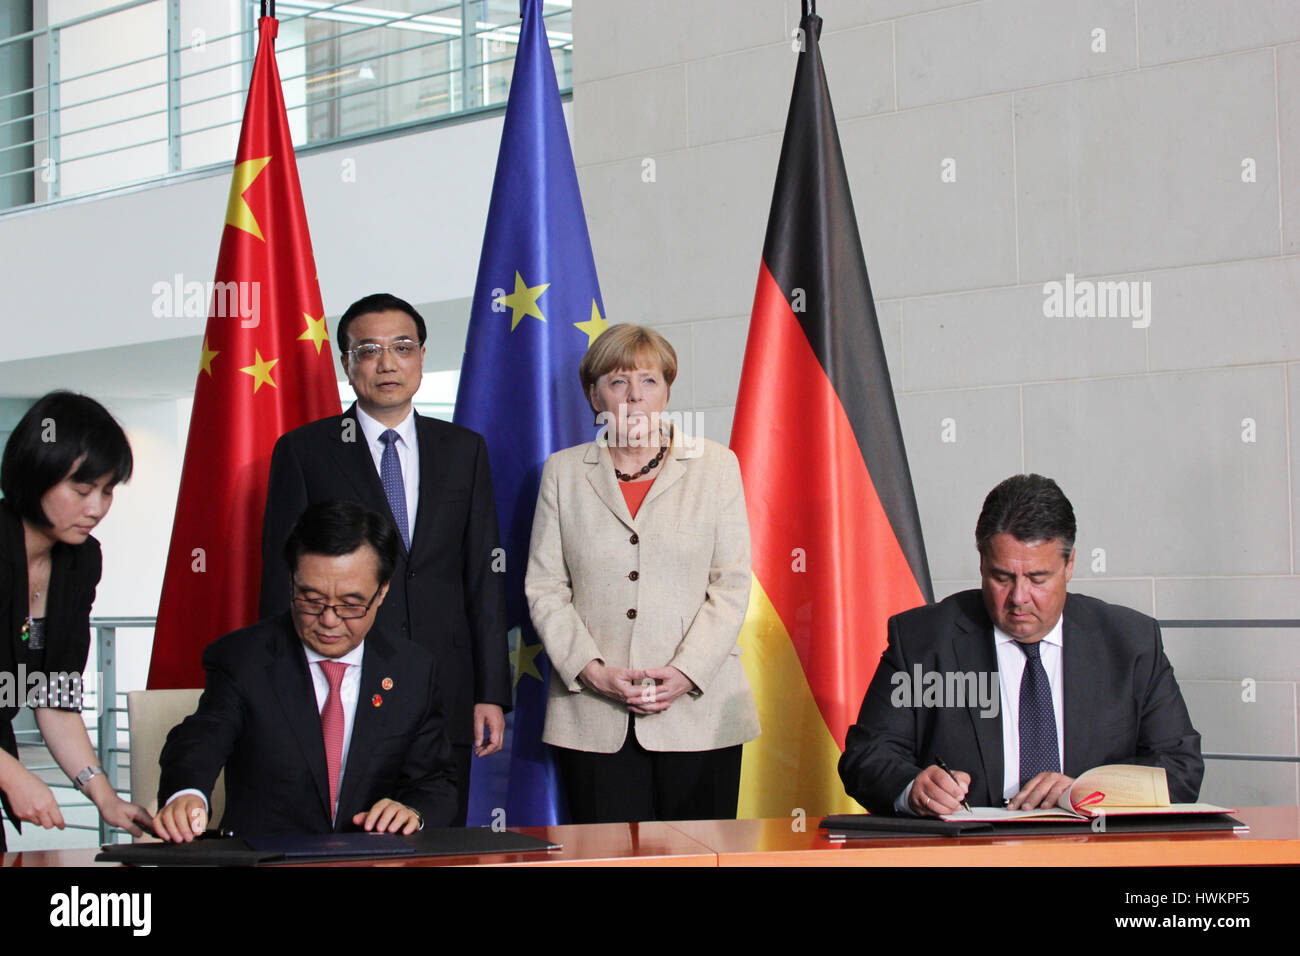 Berlin, Allemagne, October 10th, 2014 : délégation du gouvernement chinois se réunit avec délégation allemande d'accords économiques Banque D'Images